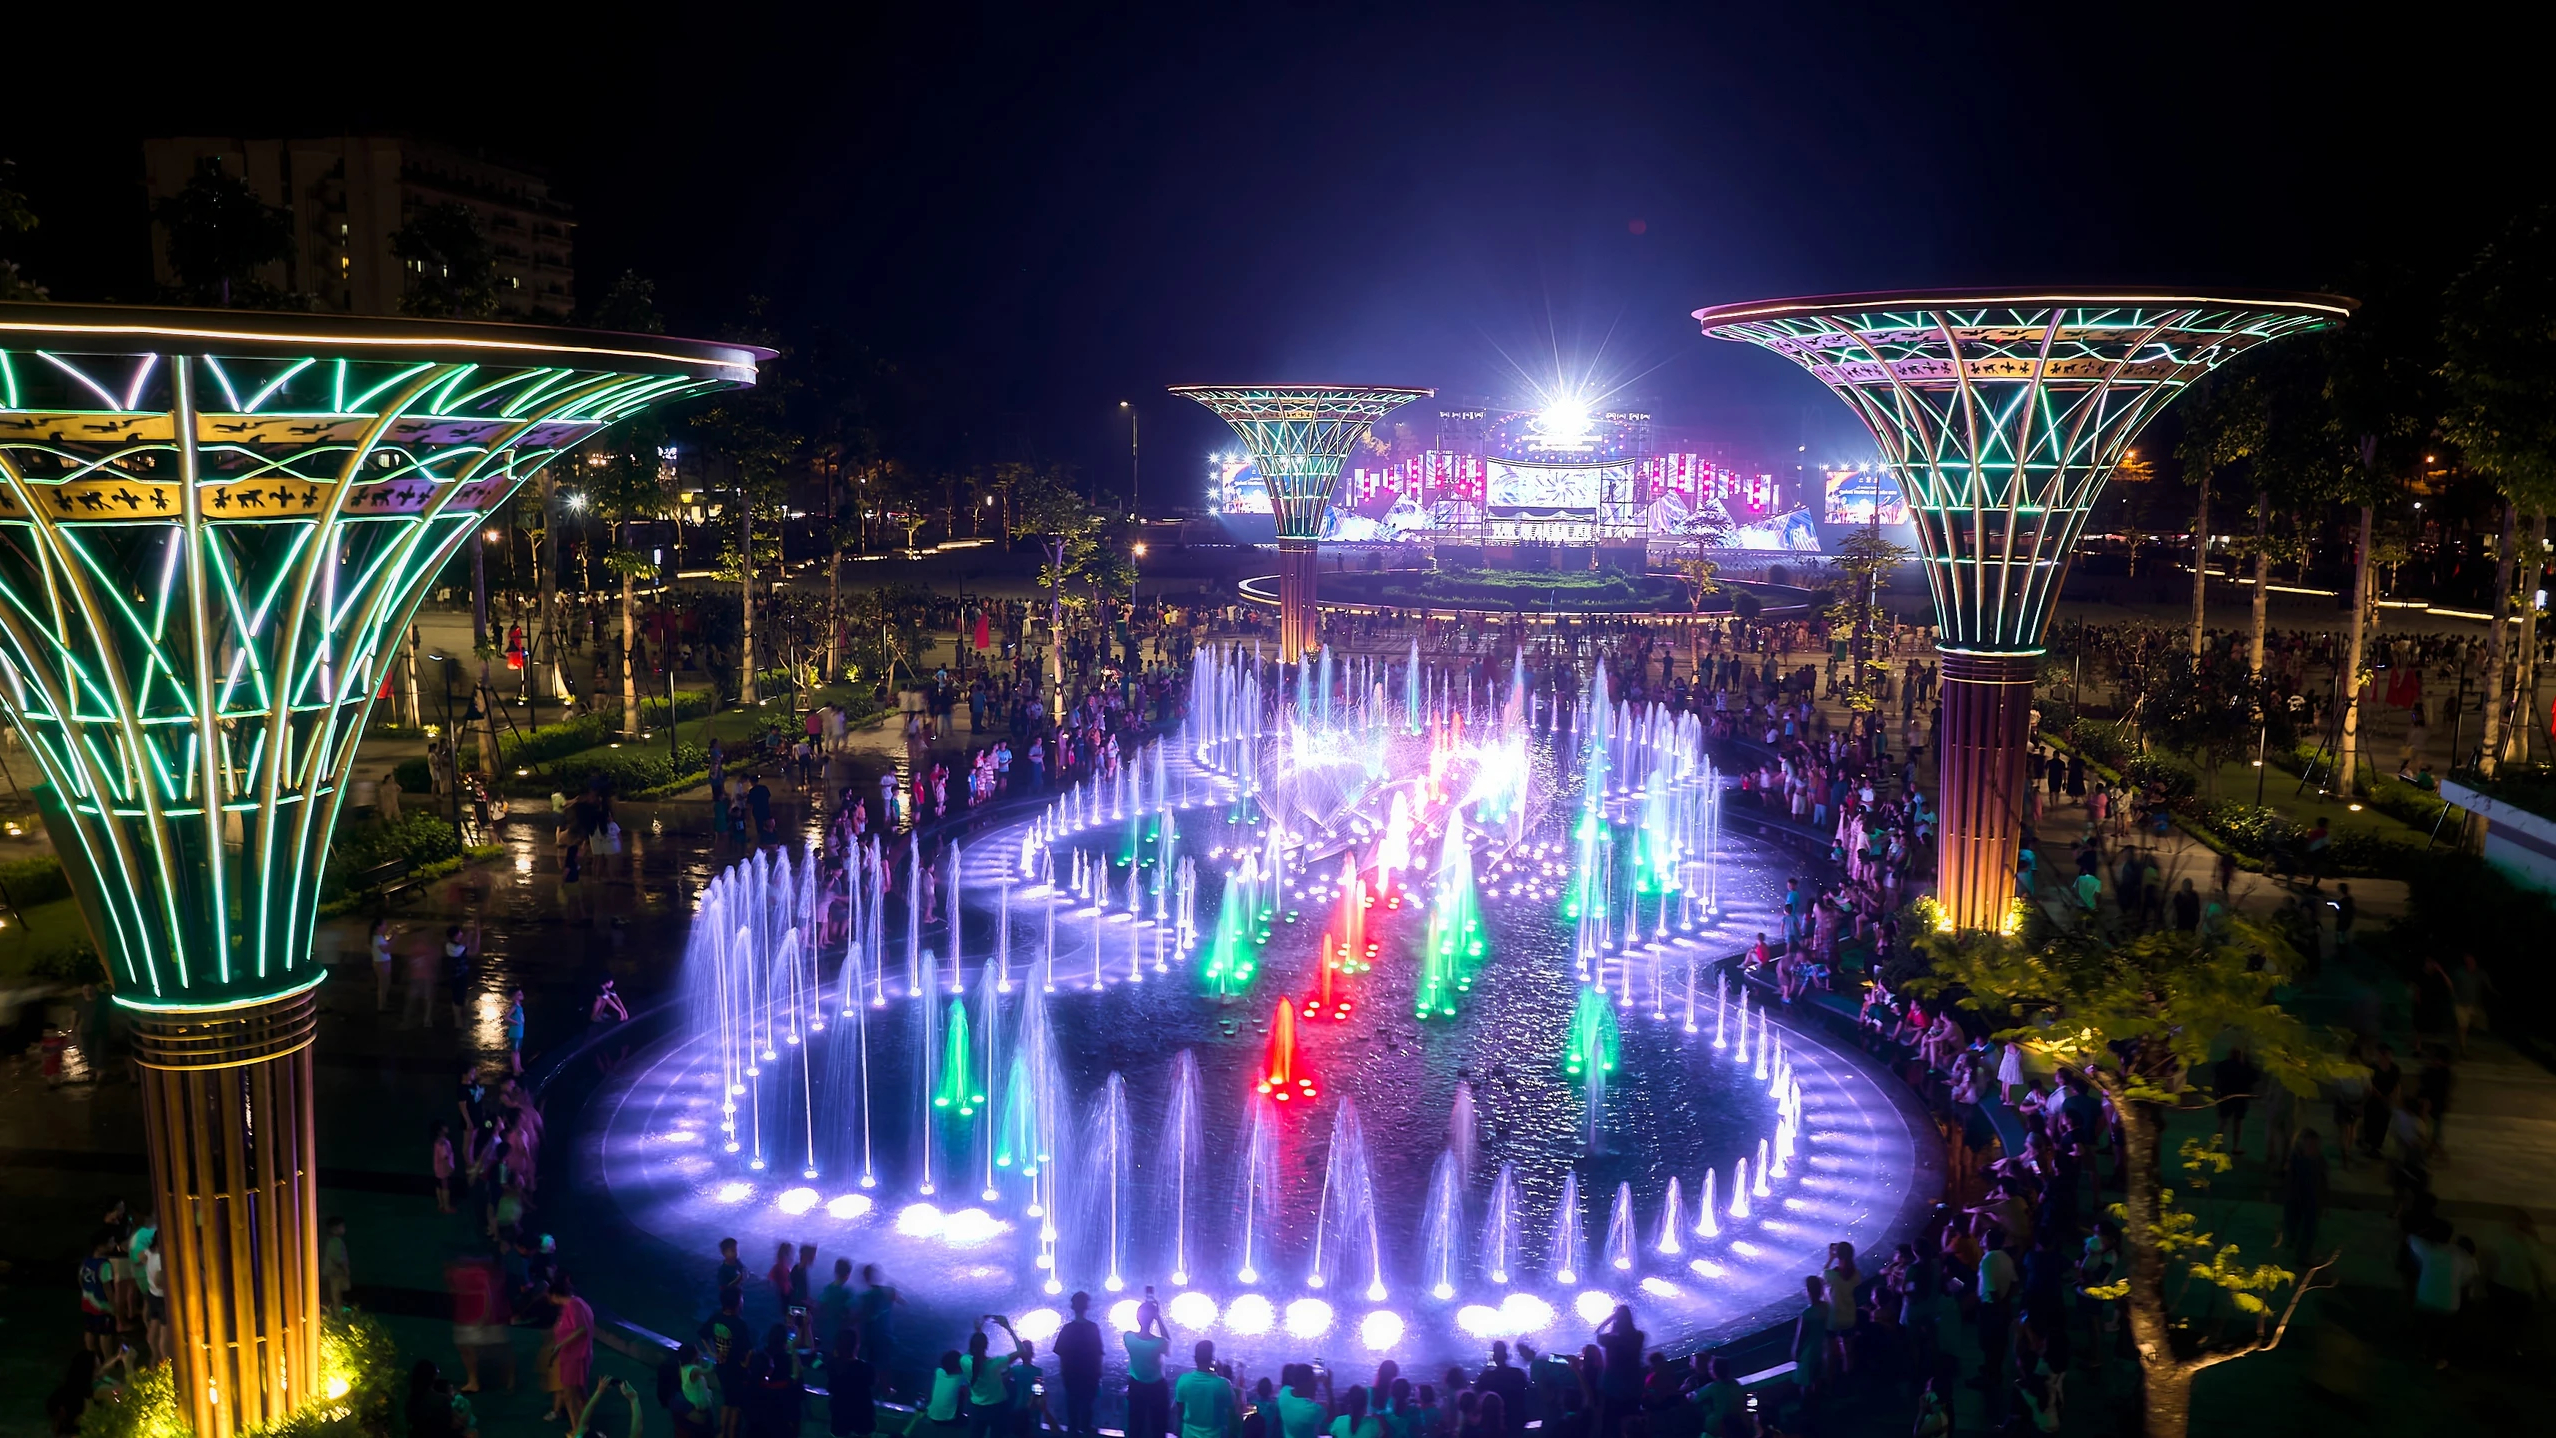 Quảng trường biển Sầm Sơn thu hút sự quan tâm của du khách với công nghệ nhạc nước trên nền ánh sáng nhiều sắc màu